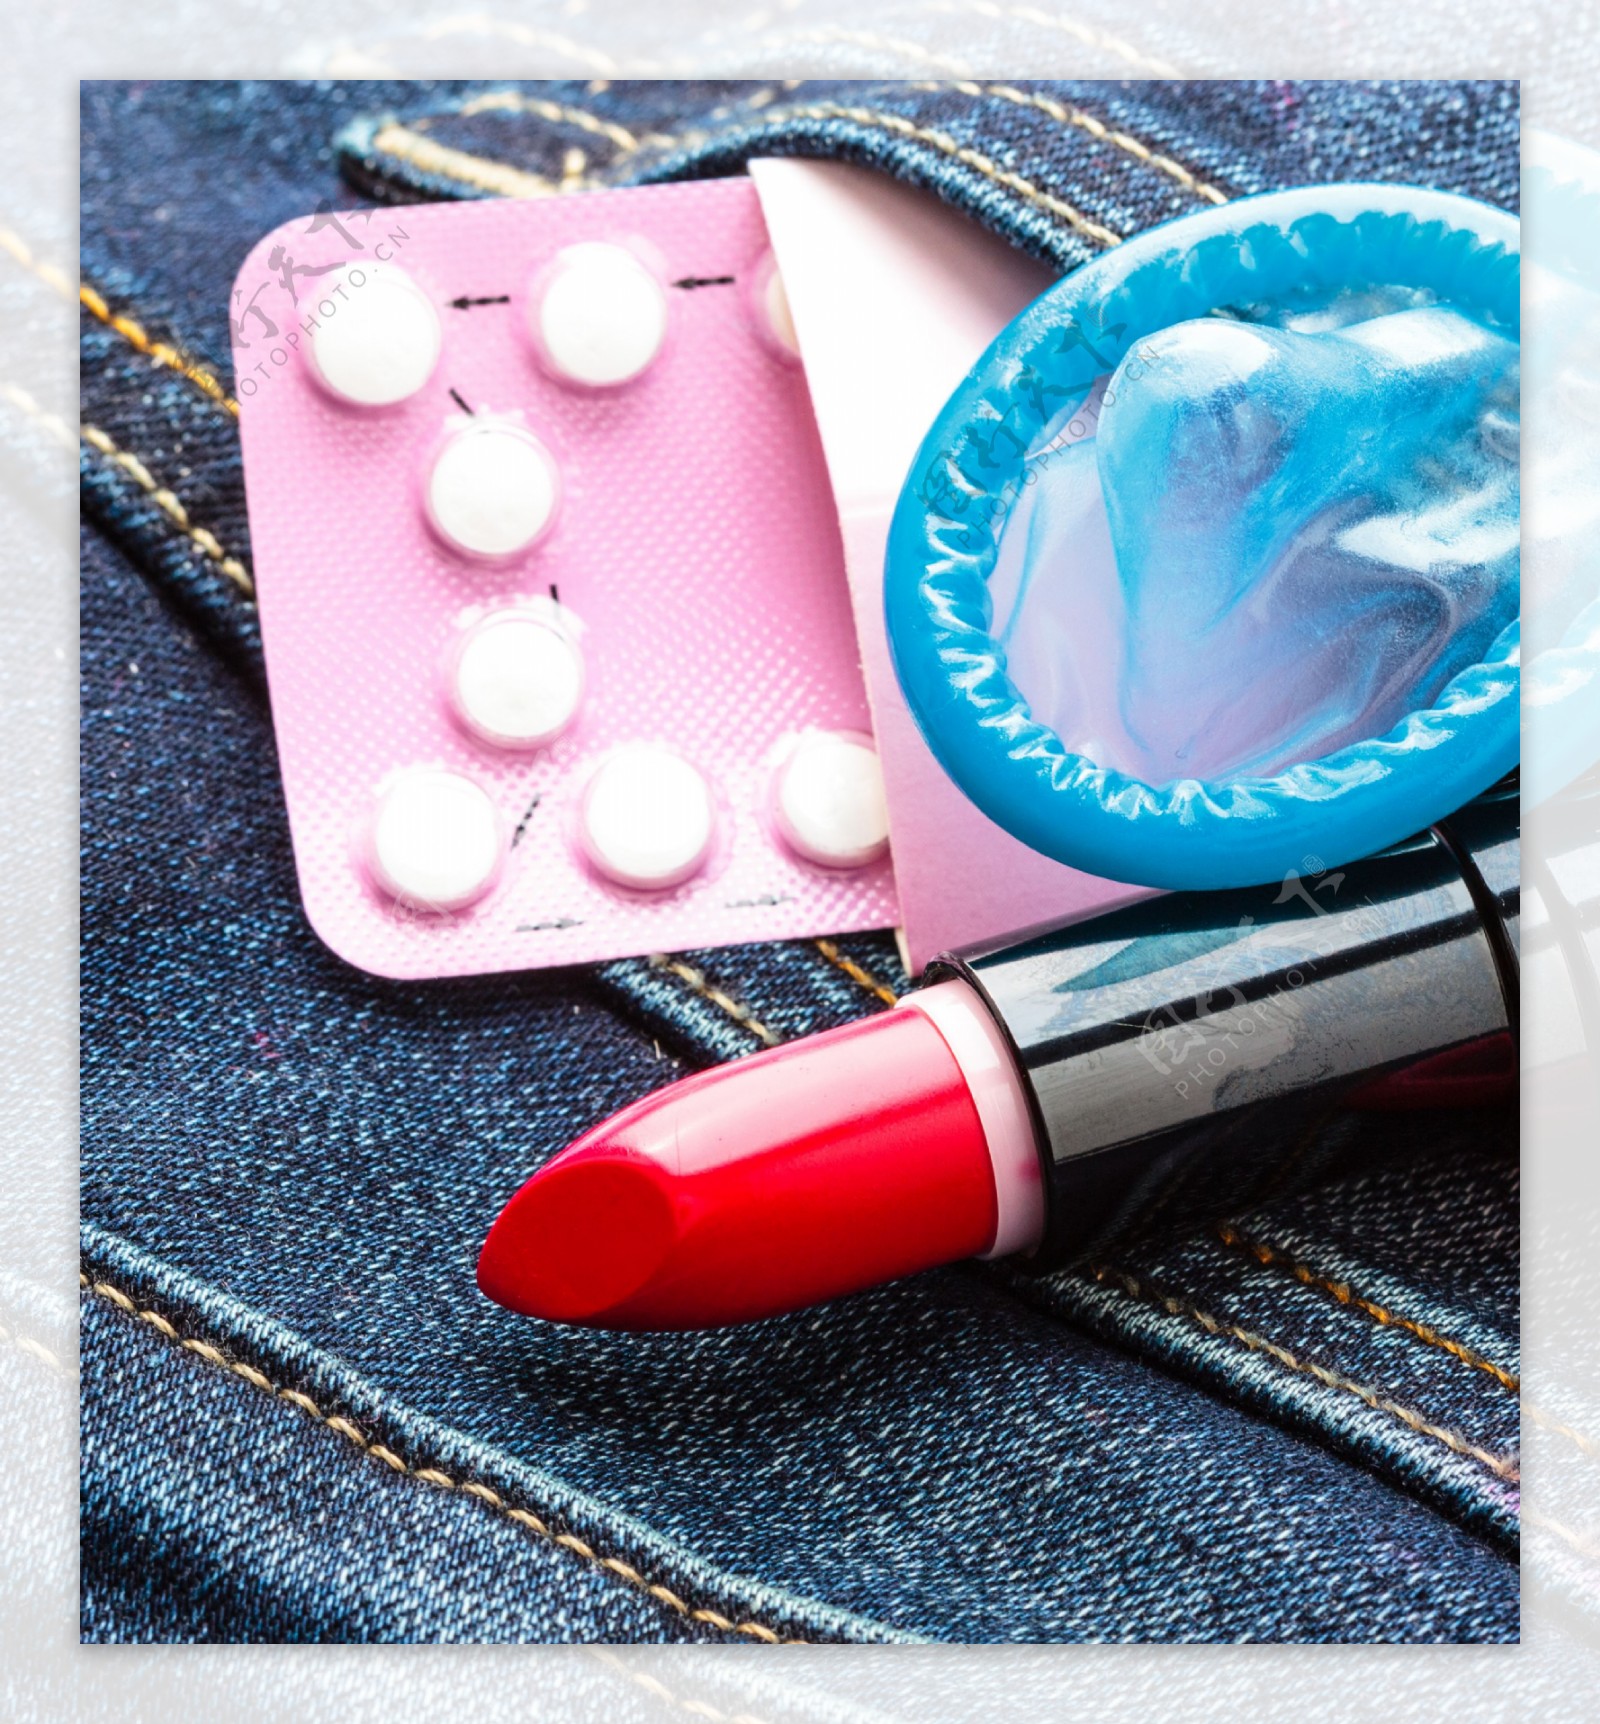 口红与避孕用品图片